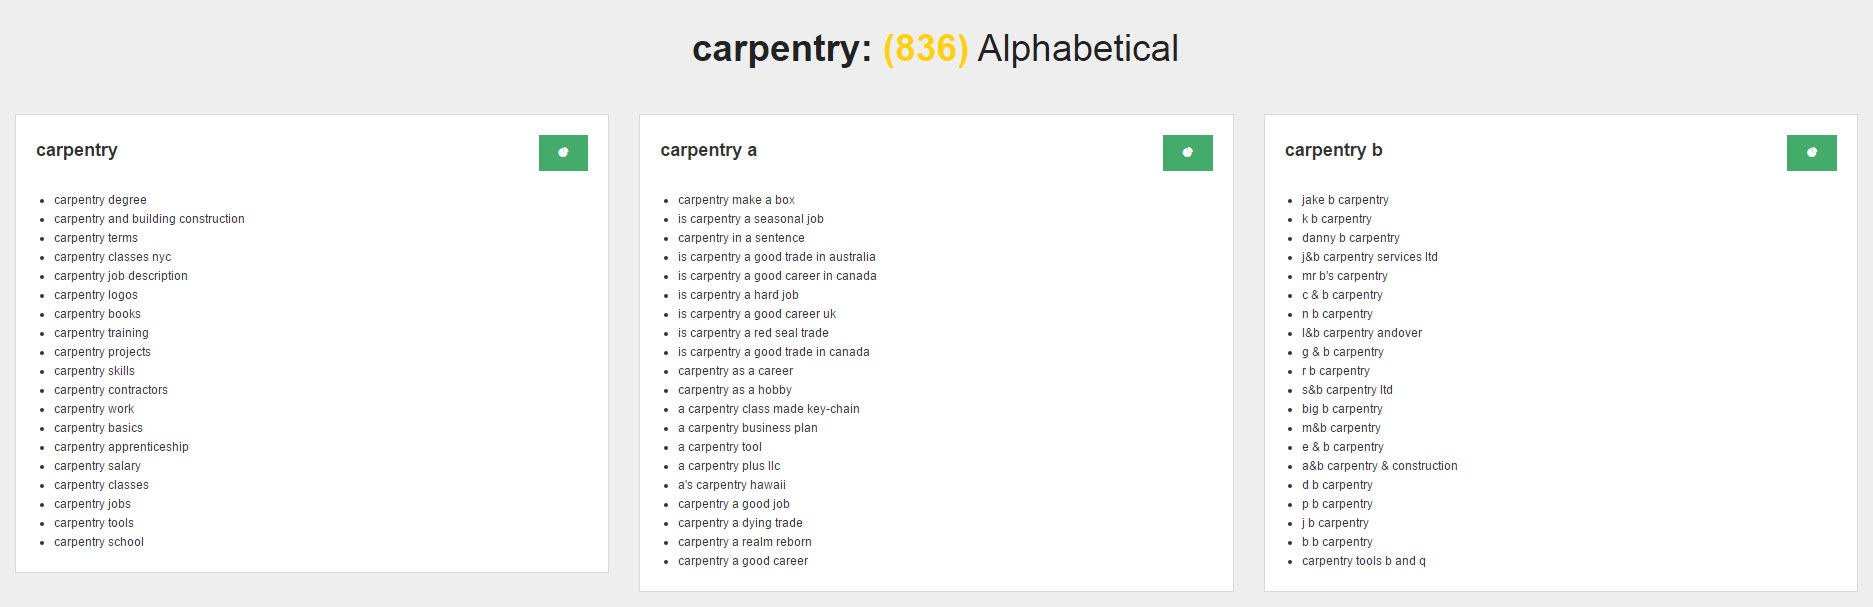 Content Ideas - AnswerThePublic Carpentry Alphabetical